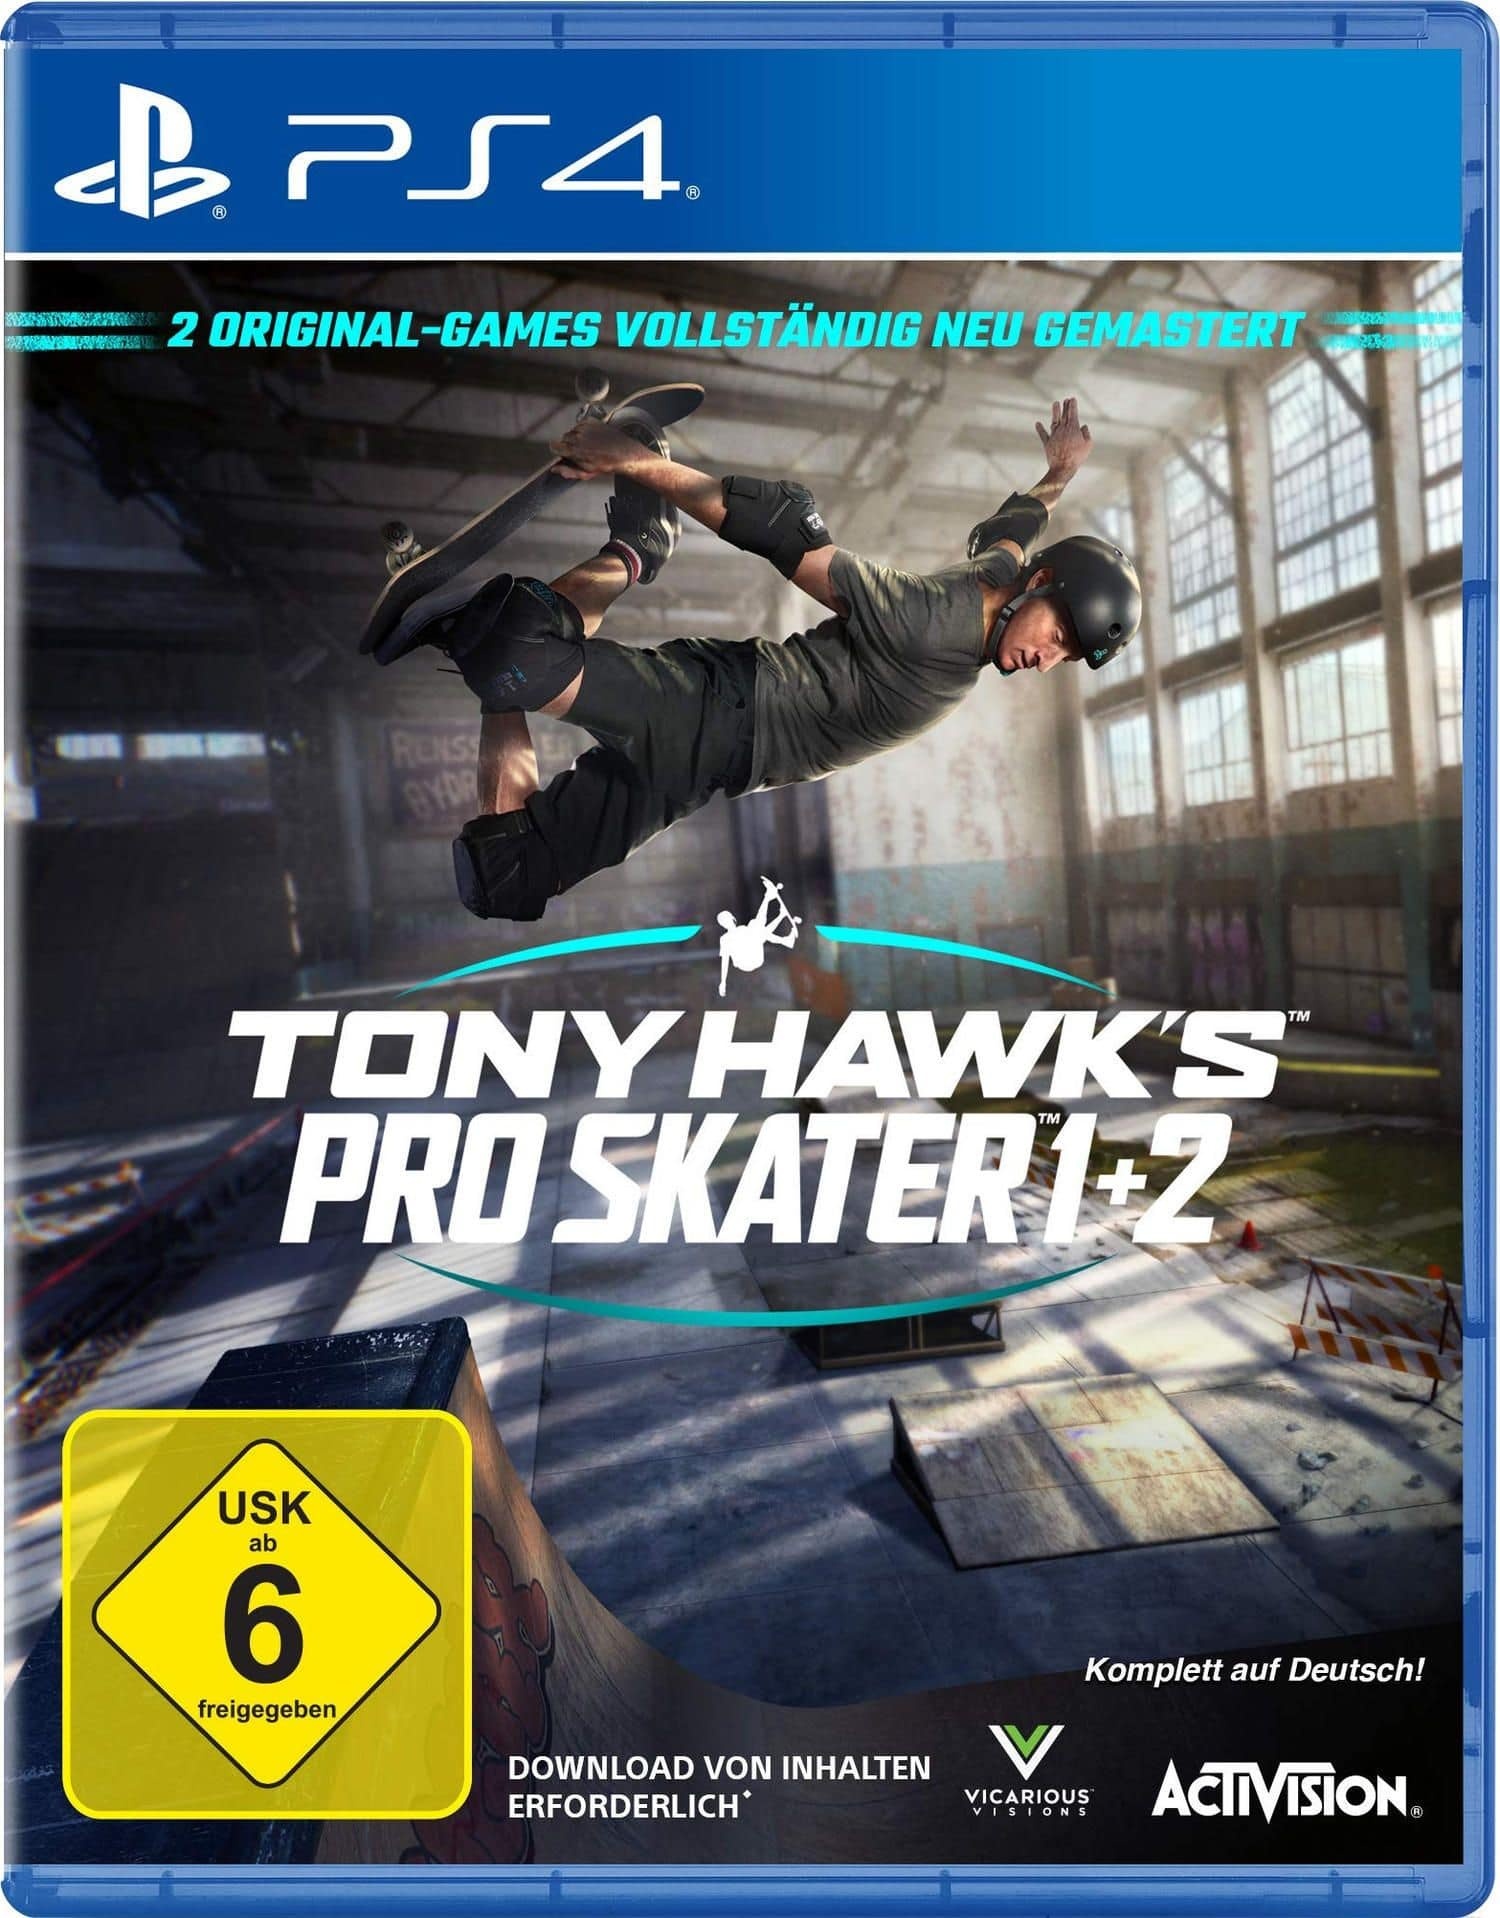 Tony Hawks Pro Skater 1 + 2 (PlayStation 4)